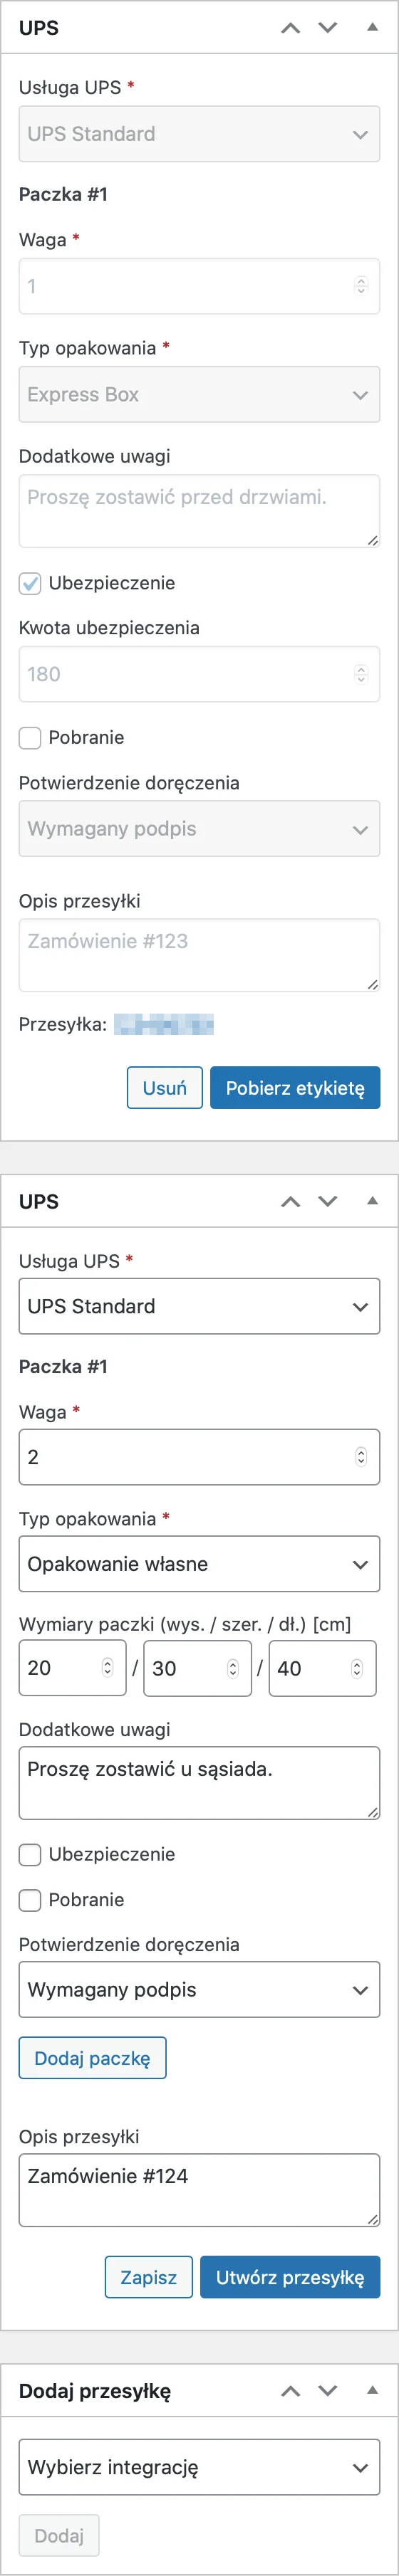 UPS Etykiety nadawcze i śledzenie przesyłek - Dodatkowe przesyłki UPS